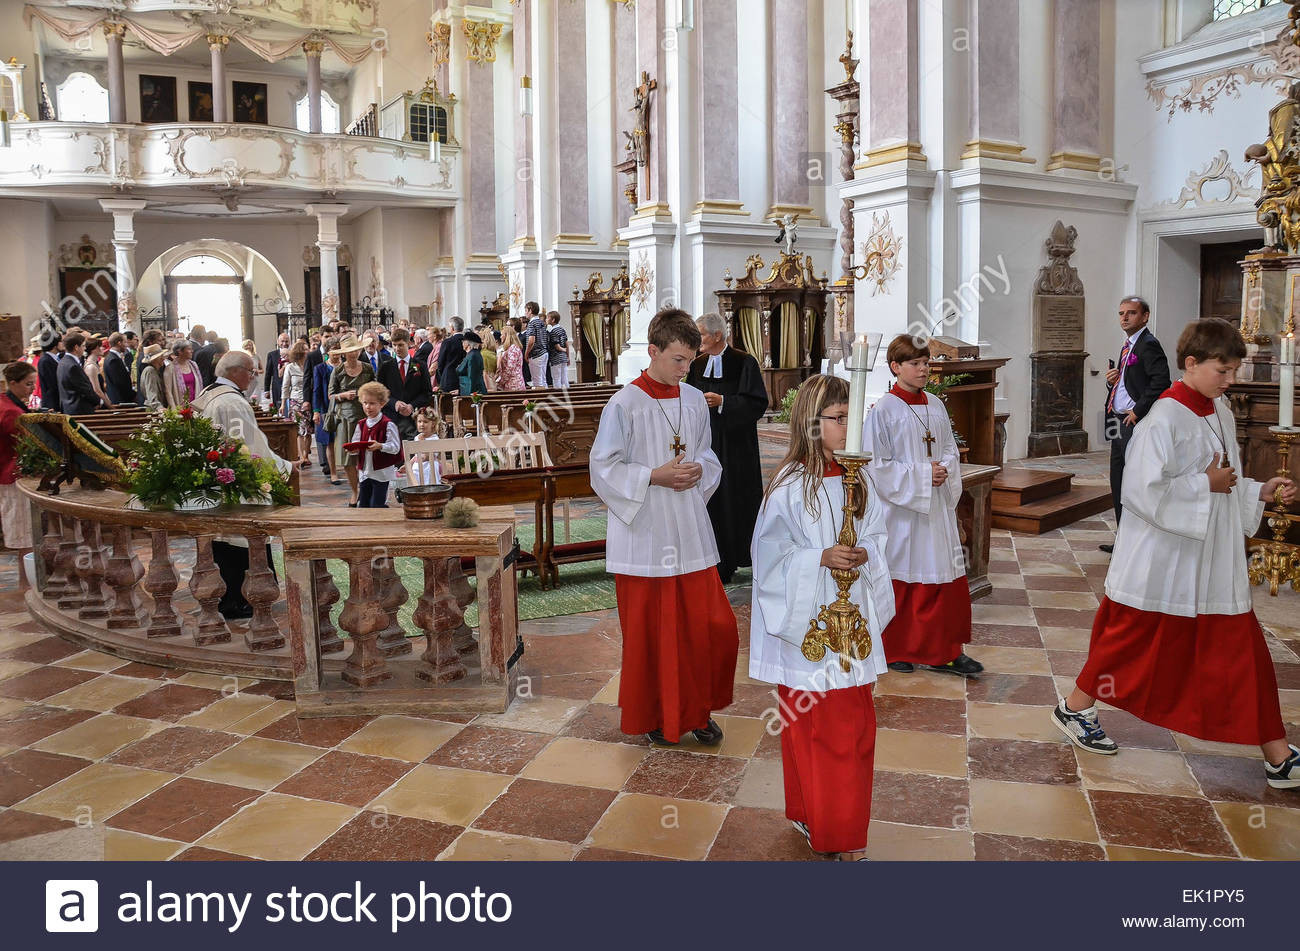 Ökumenische Hochzeit
 kirchliche Trauung Priester und Ministranten marschieren